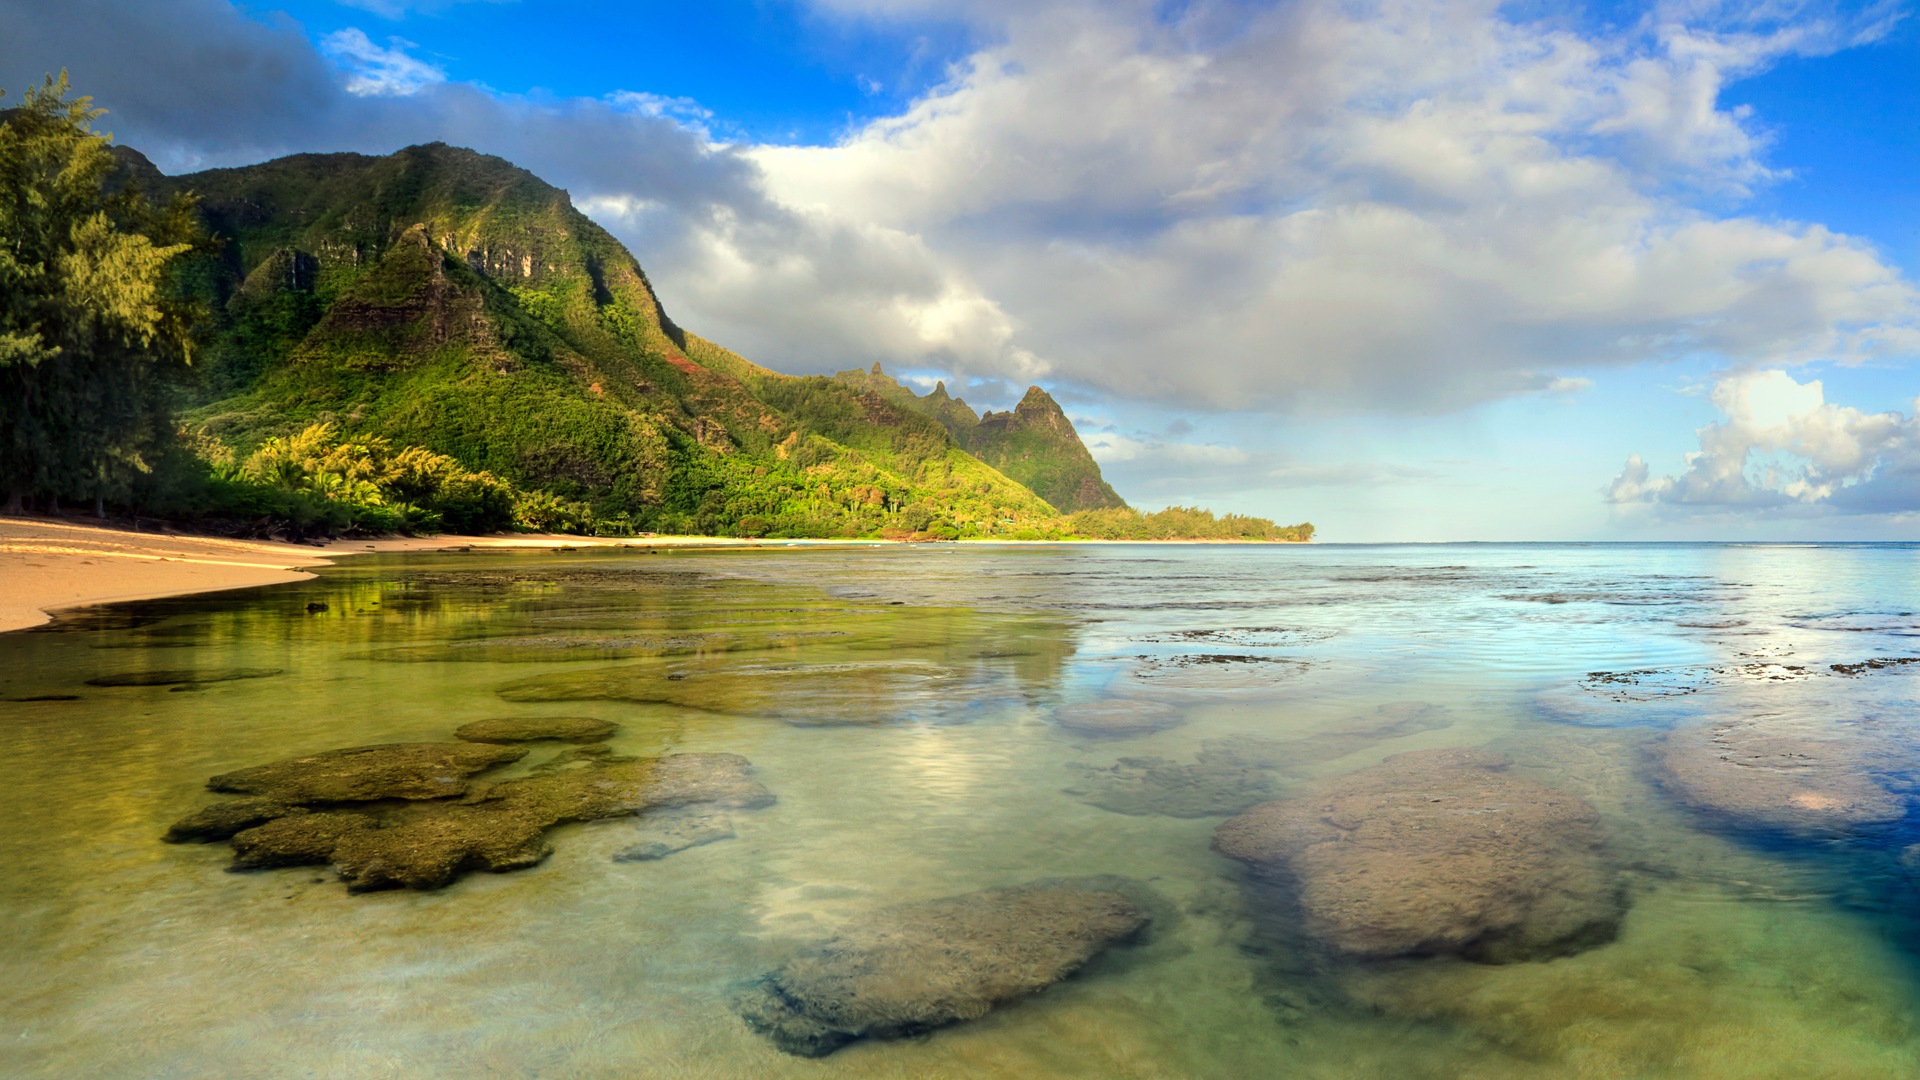 Windows 8 Theme Wallpaper: Hawaiian Landschaft #1 - 1920x1080